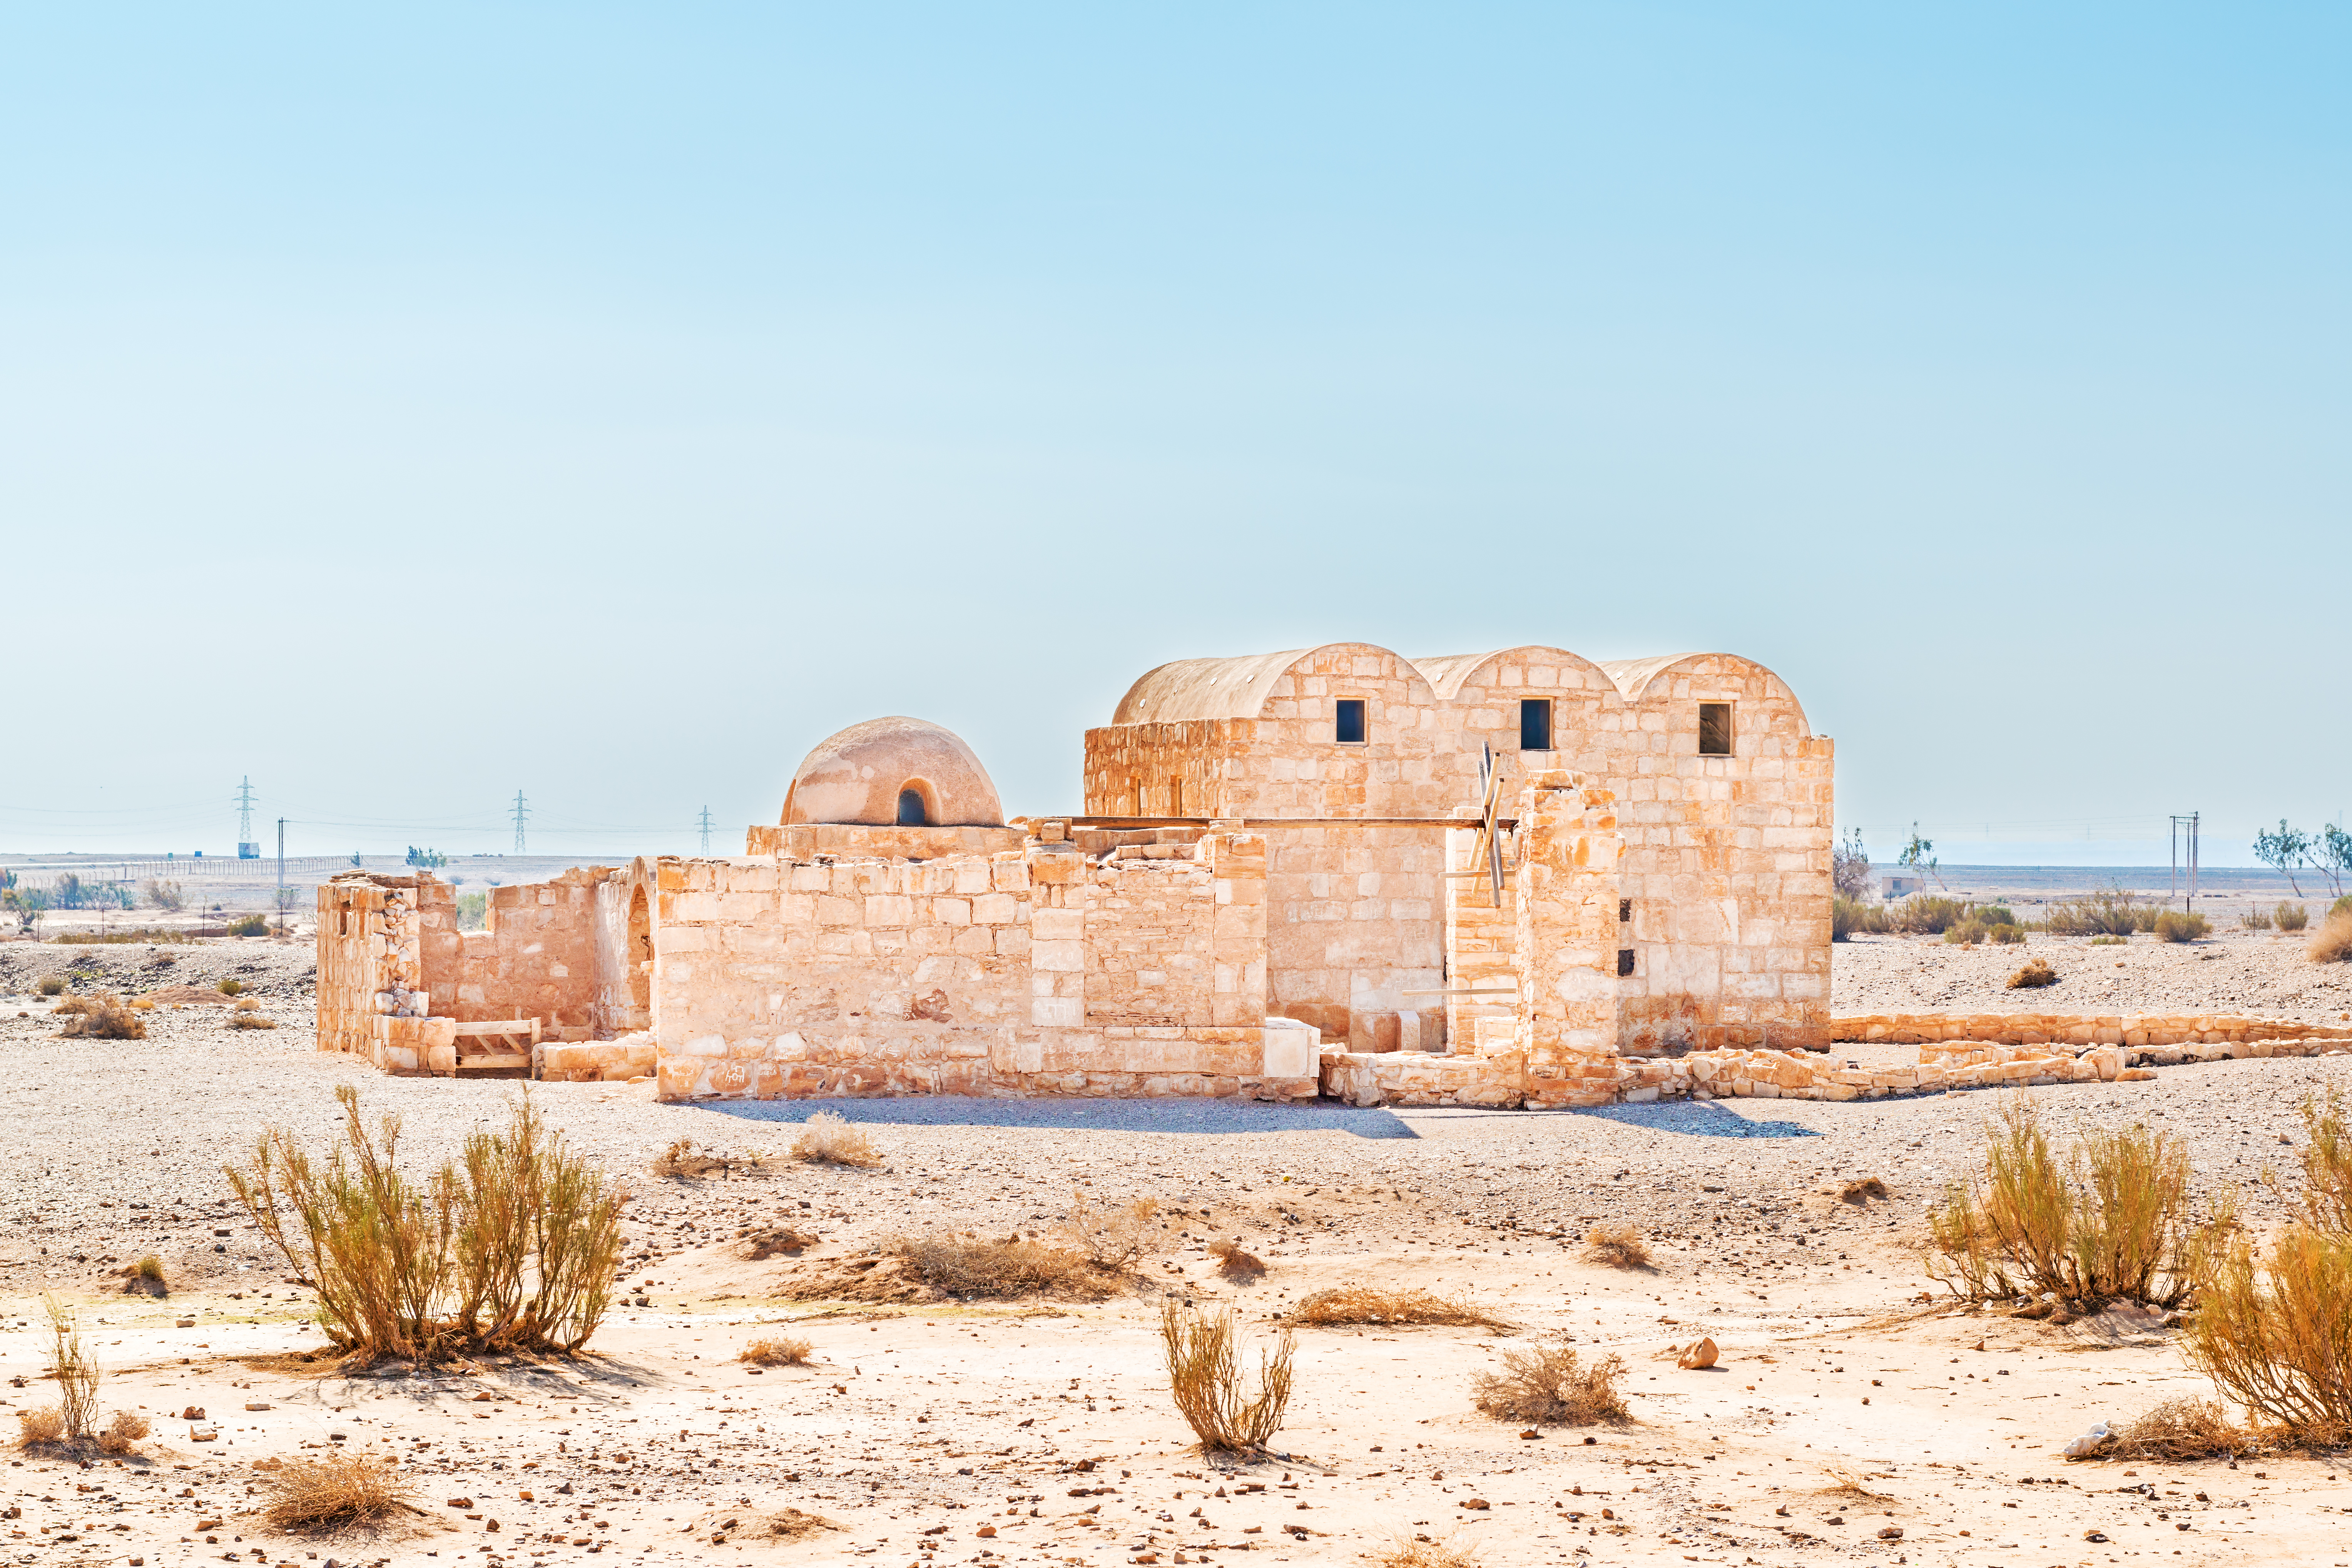 Quelle assurance santé pour un voyage en Jordanie ?